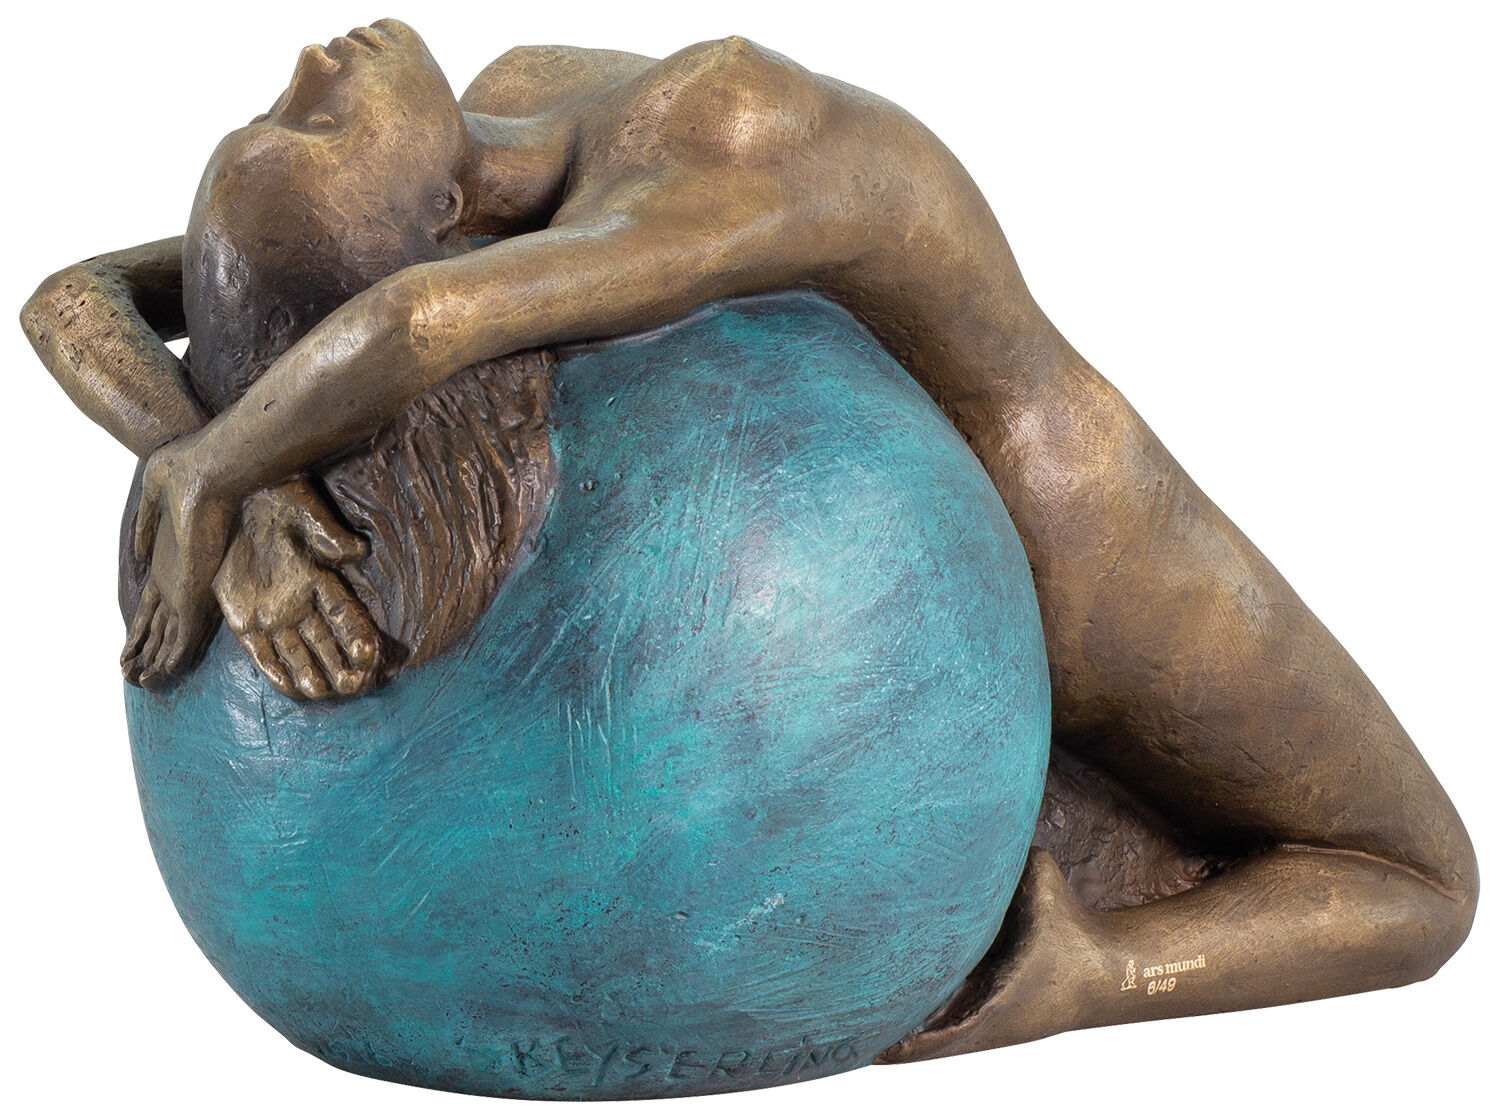 Skulptur "Letting Go", brons von Sorina von Keyserling